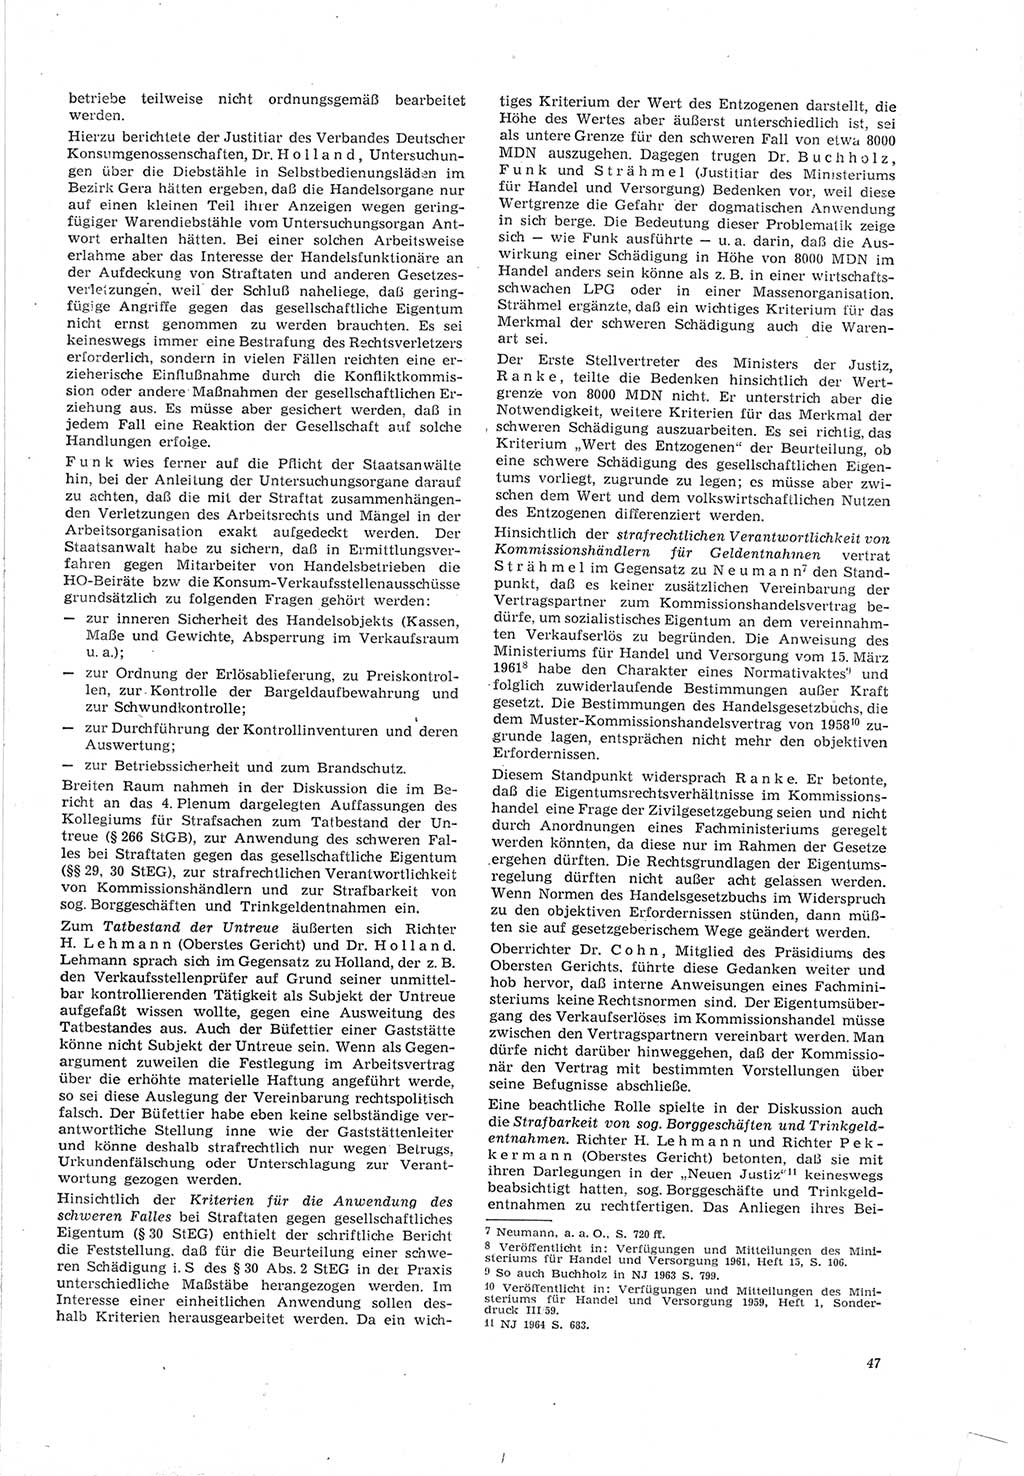 Neue Justiz (NJ), Zeitschrift für Recht und Rechtswissenschaft [Deutsche Demokratische Republik (DDR)], 19. Jahrgang 1965, Seite 47 (NJ DDR 1965, S. 47)